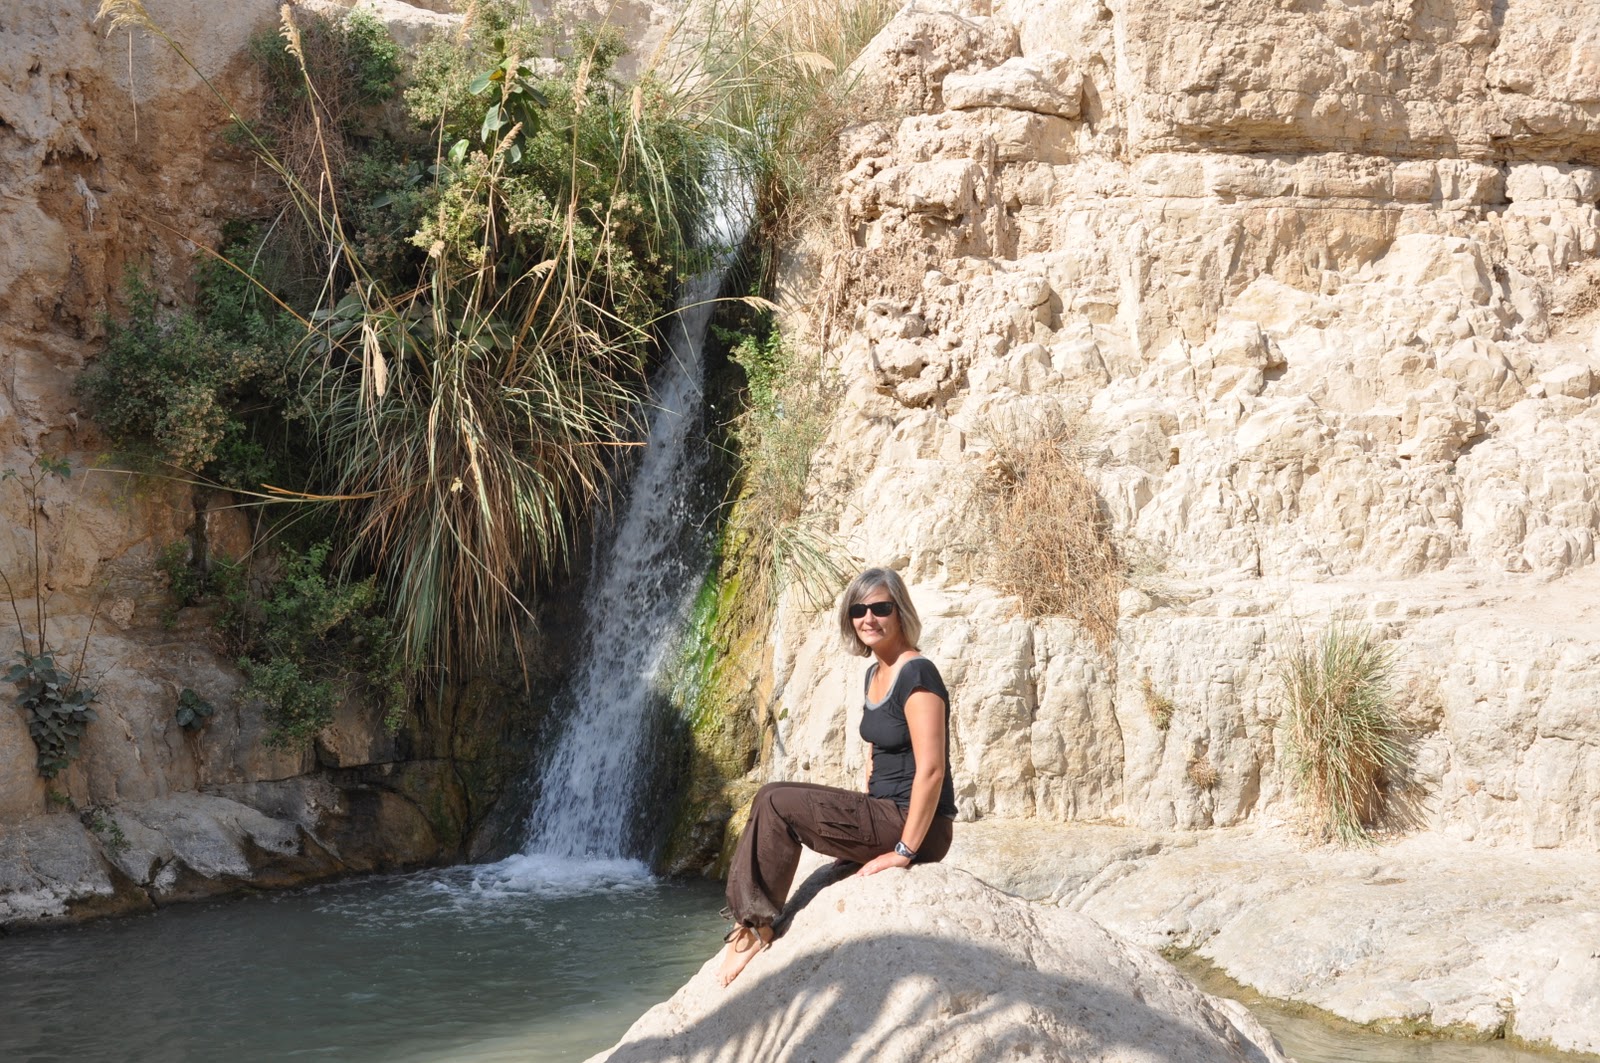 Jennifer's Trip to the Middle East: Nov 14 - Masada, Ein Gedi, Qumran Caves